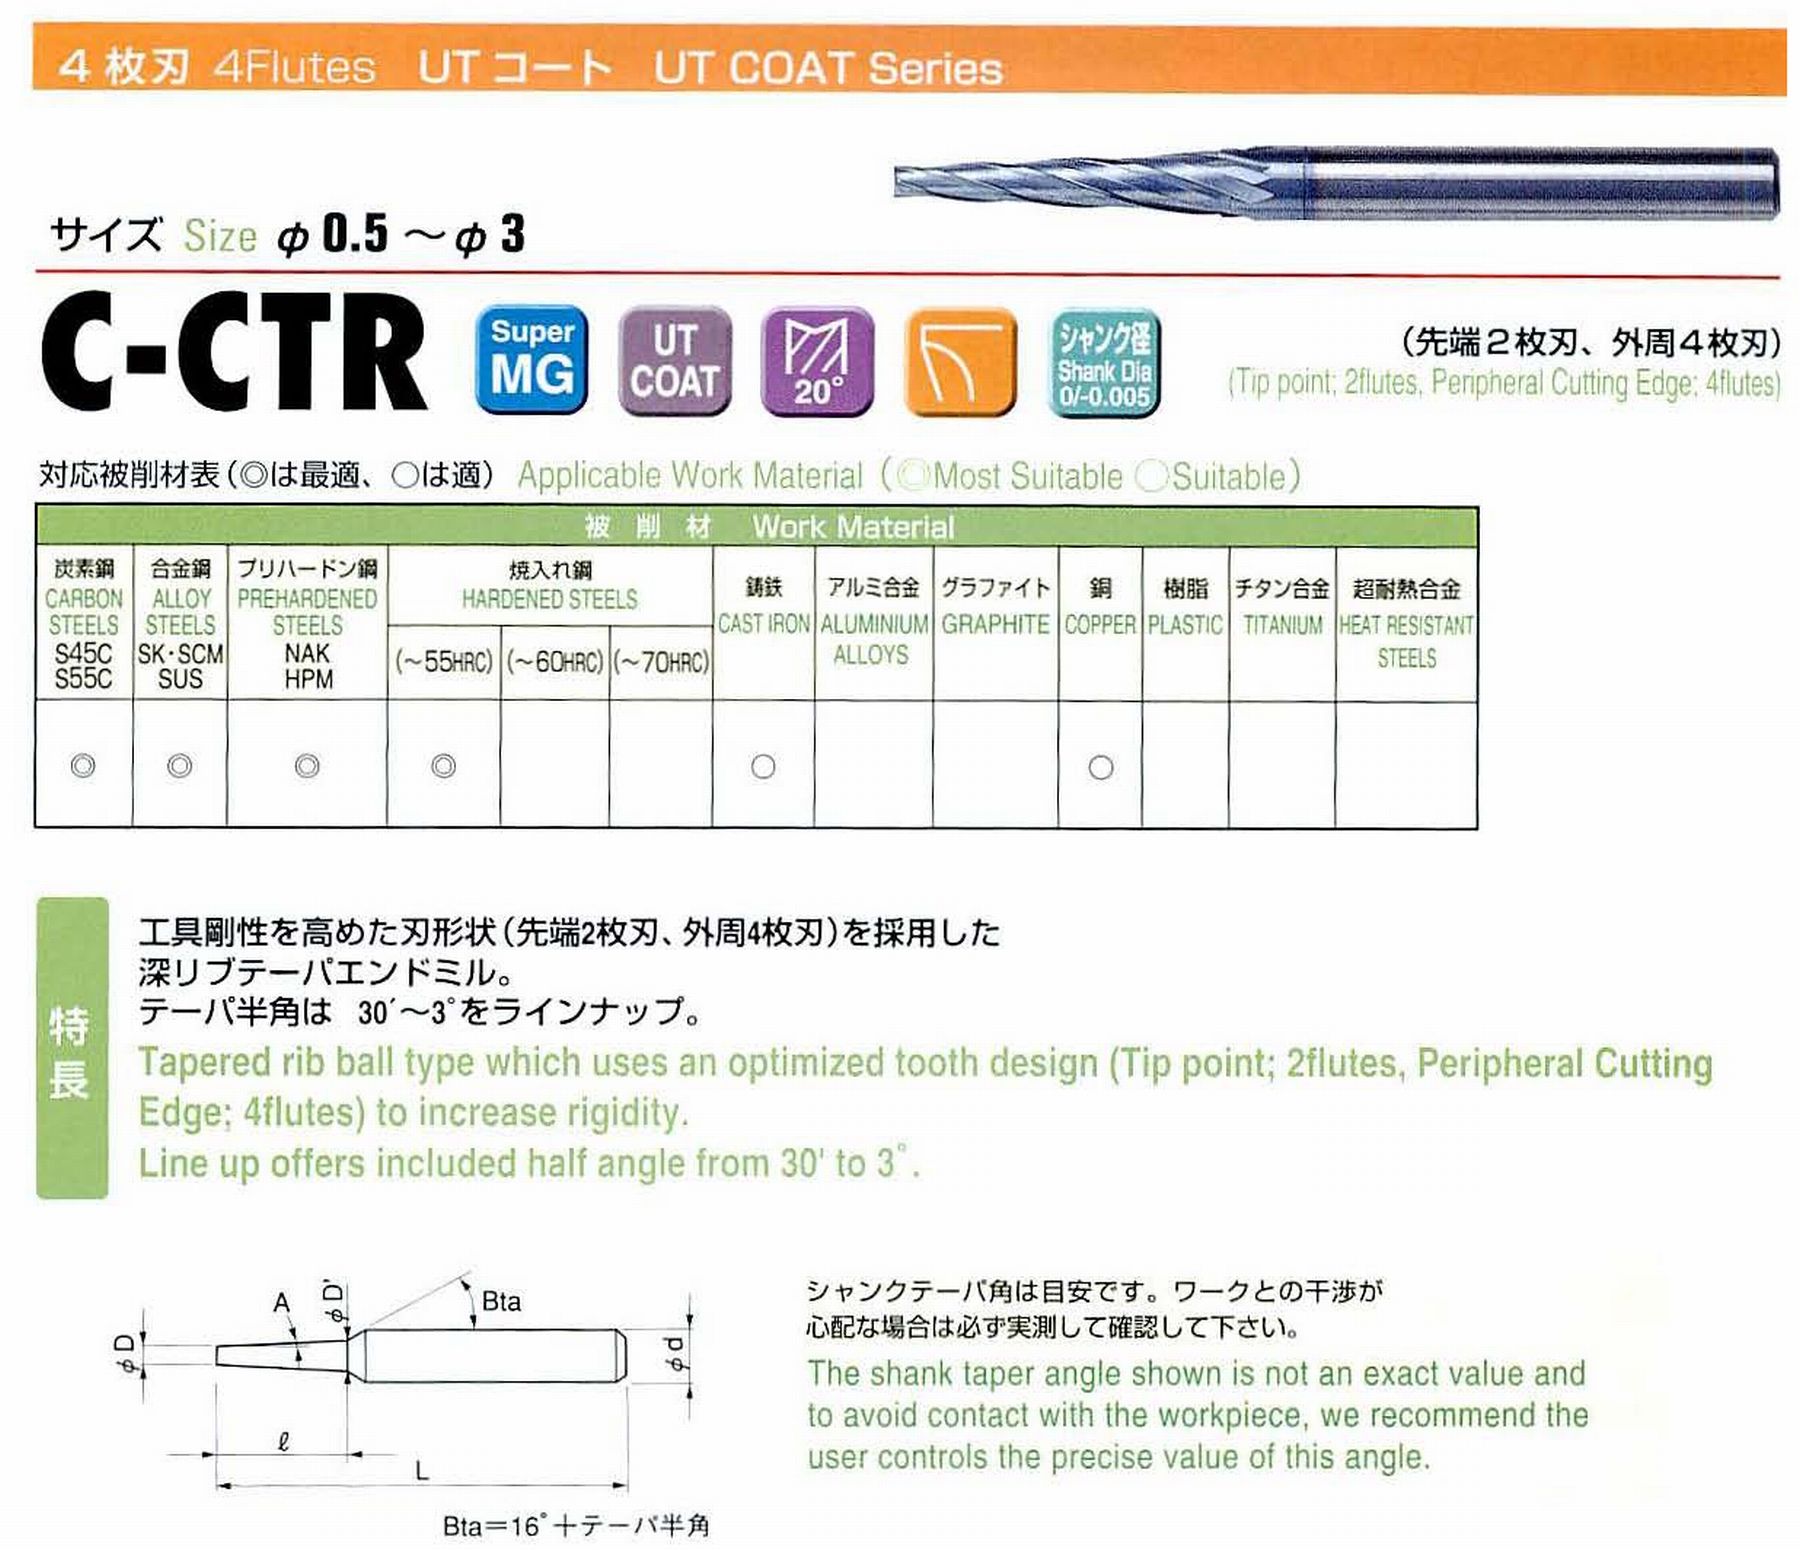 ユニオンツール 4枚刃 C-CTR4017-16-4 先端径1.7 テーパ半角2° 刃長16 大端径2.82 全長55 シャンク径4